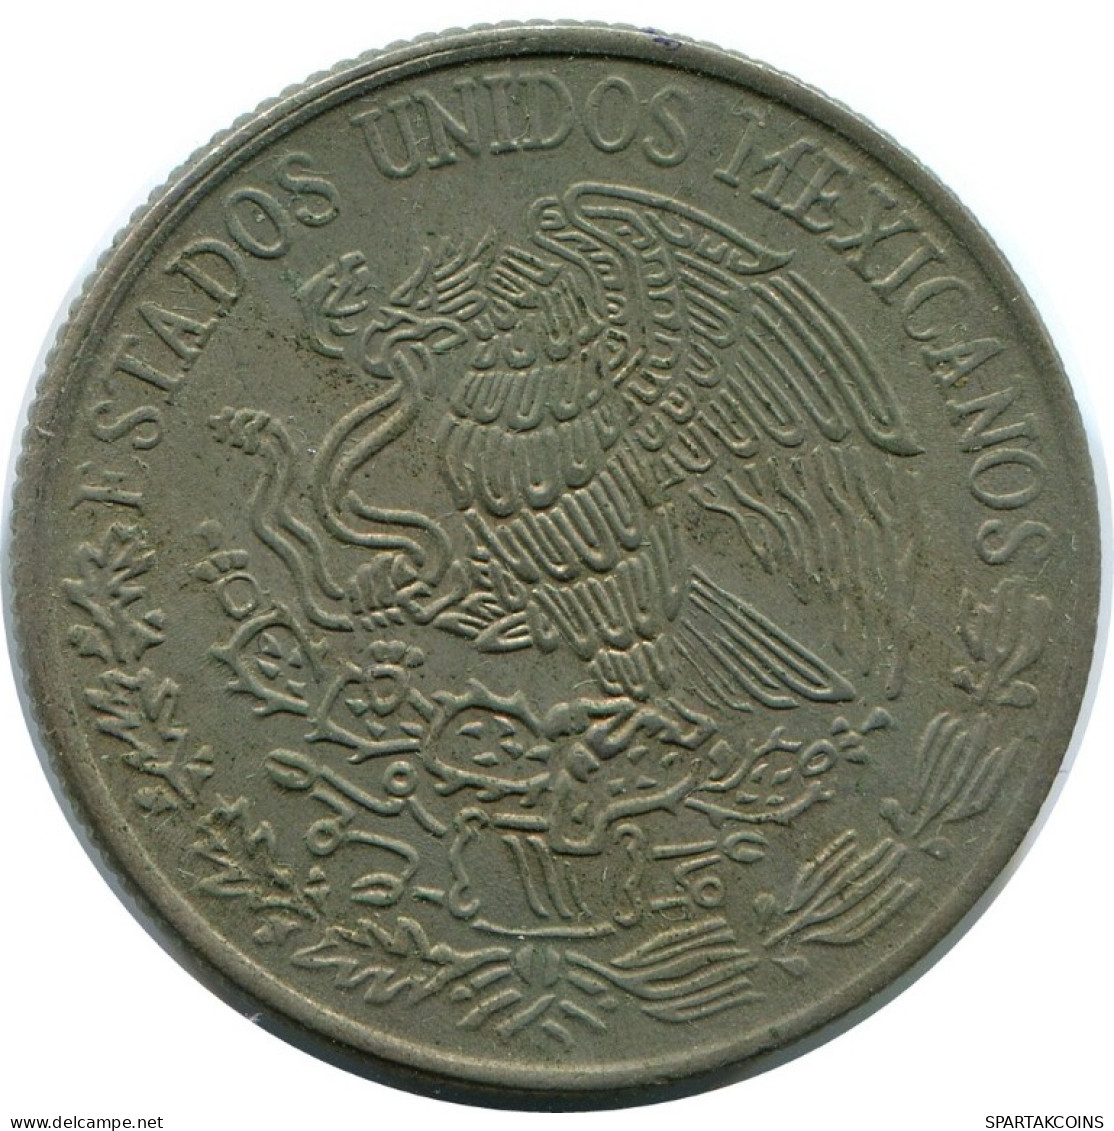 50 CENTAVOS 1980 MEXICO Coin #AH490.5.U.A - Mexico